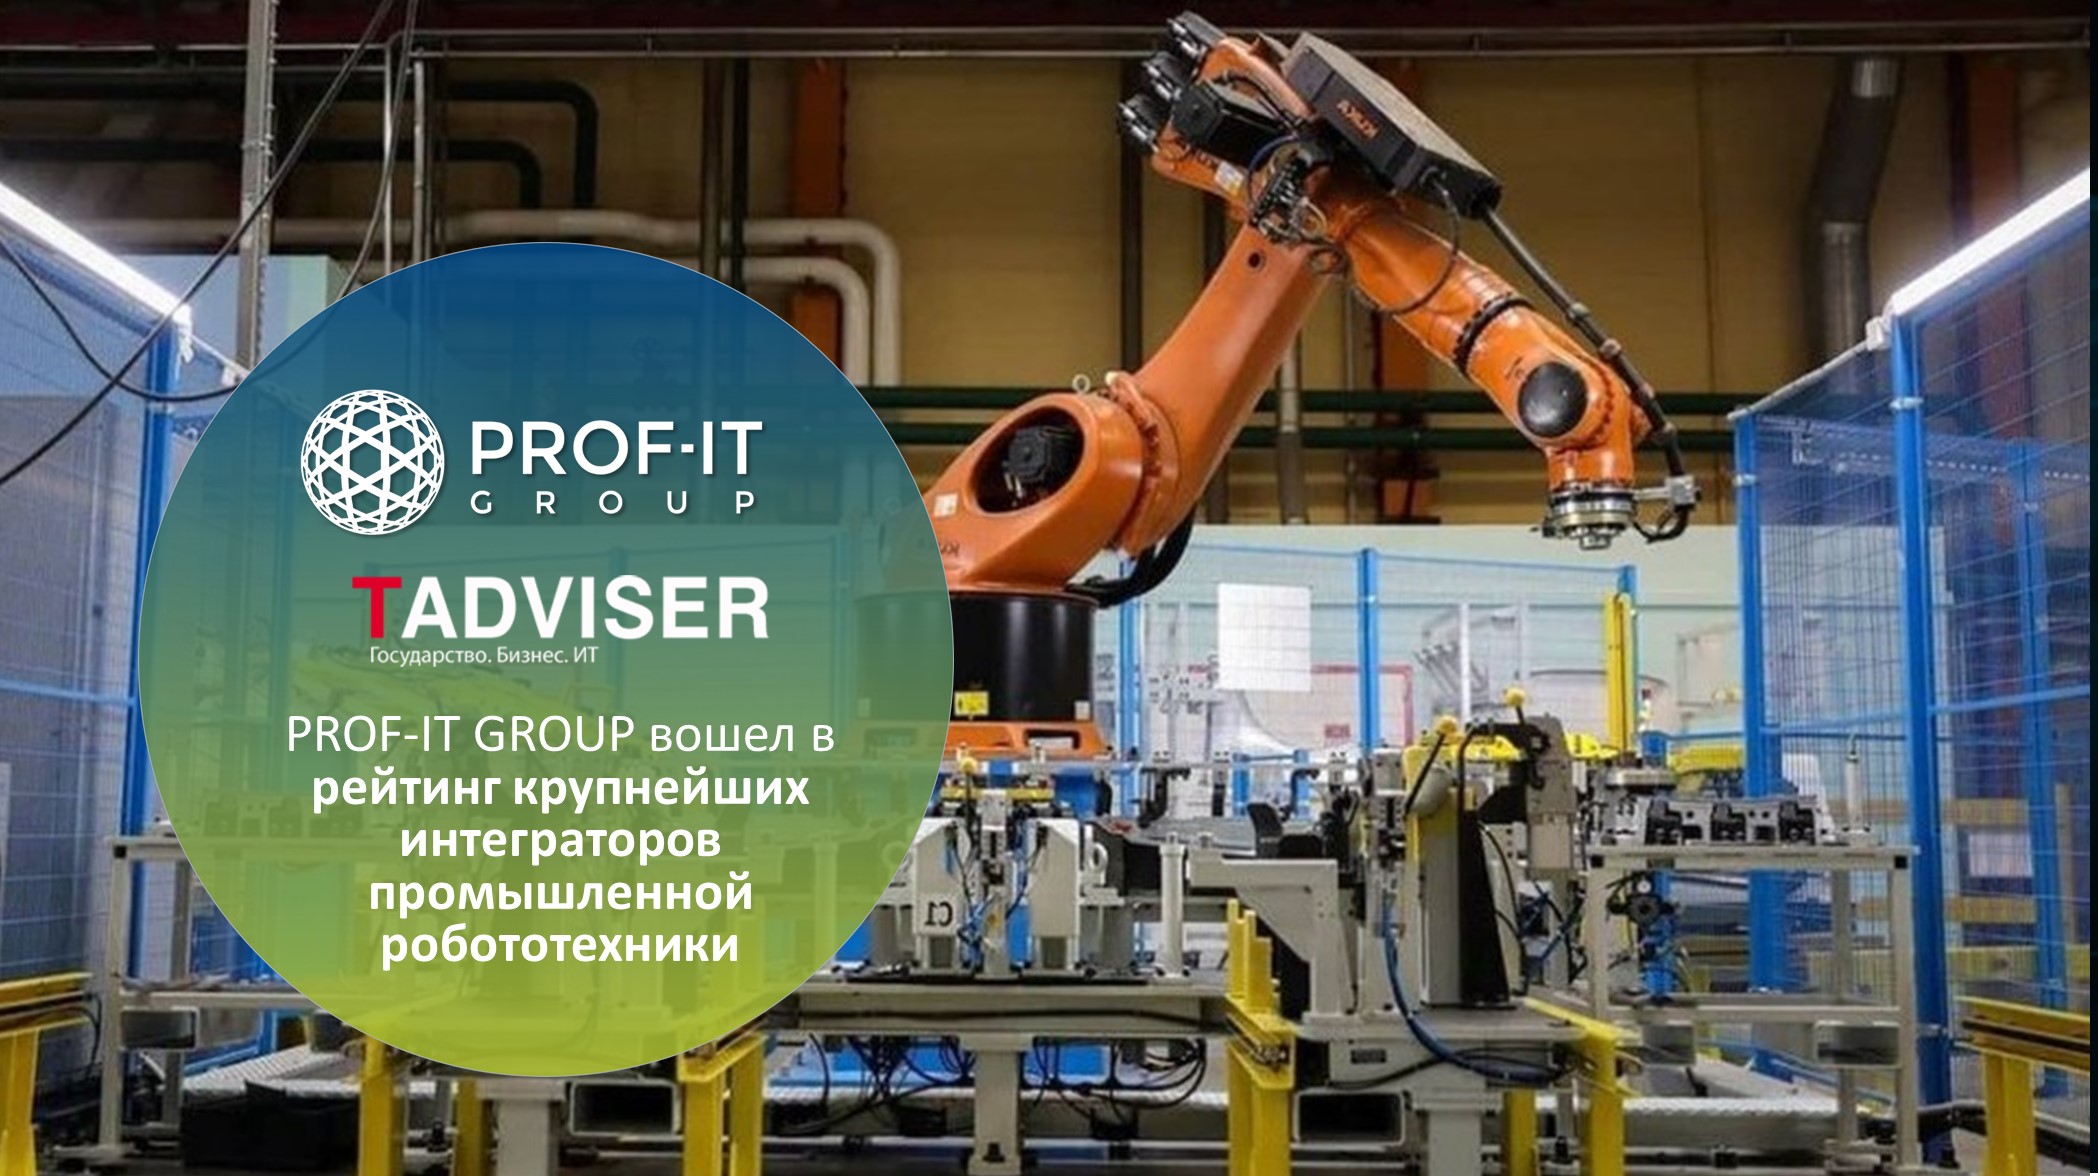 PROF-IT GROUP вошла в рейтинг крупнейших интеграторов промышленной робототехники 